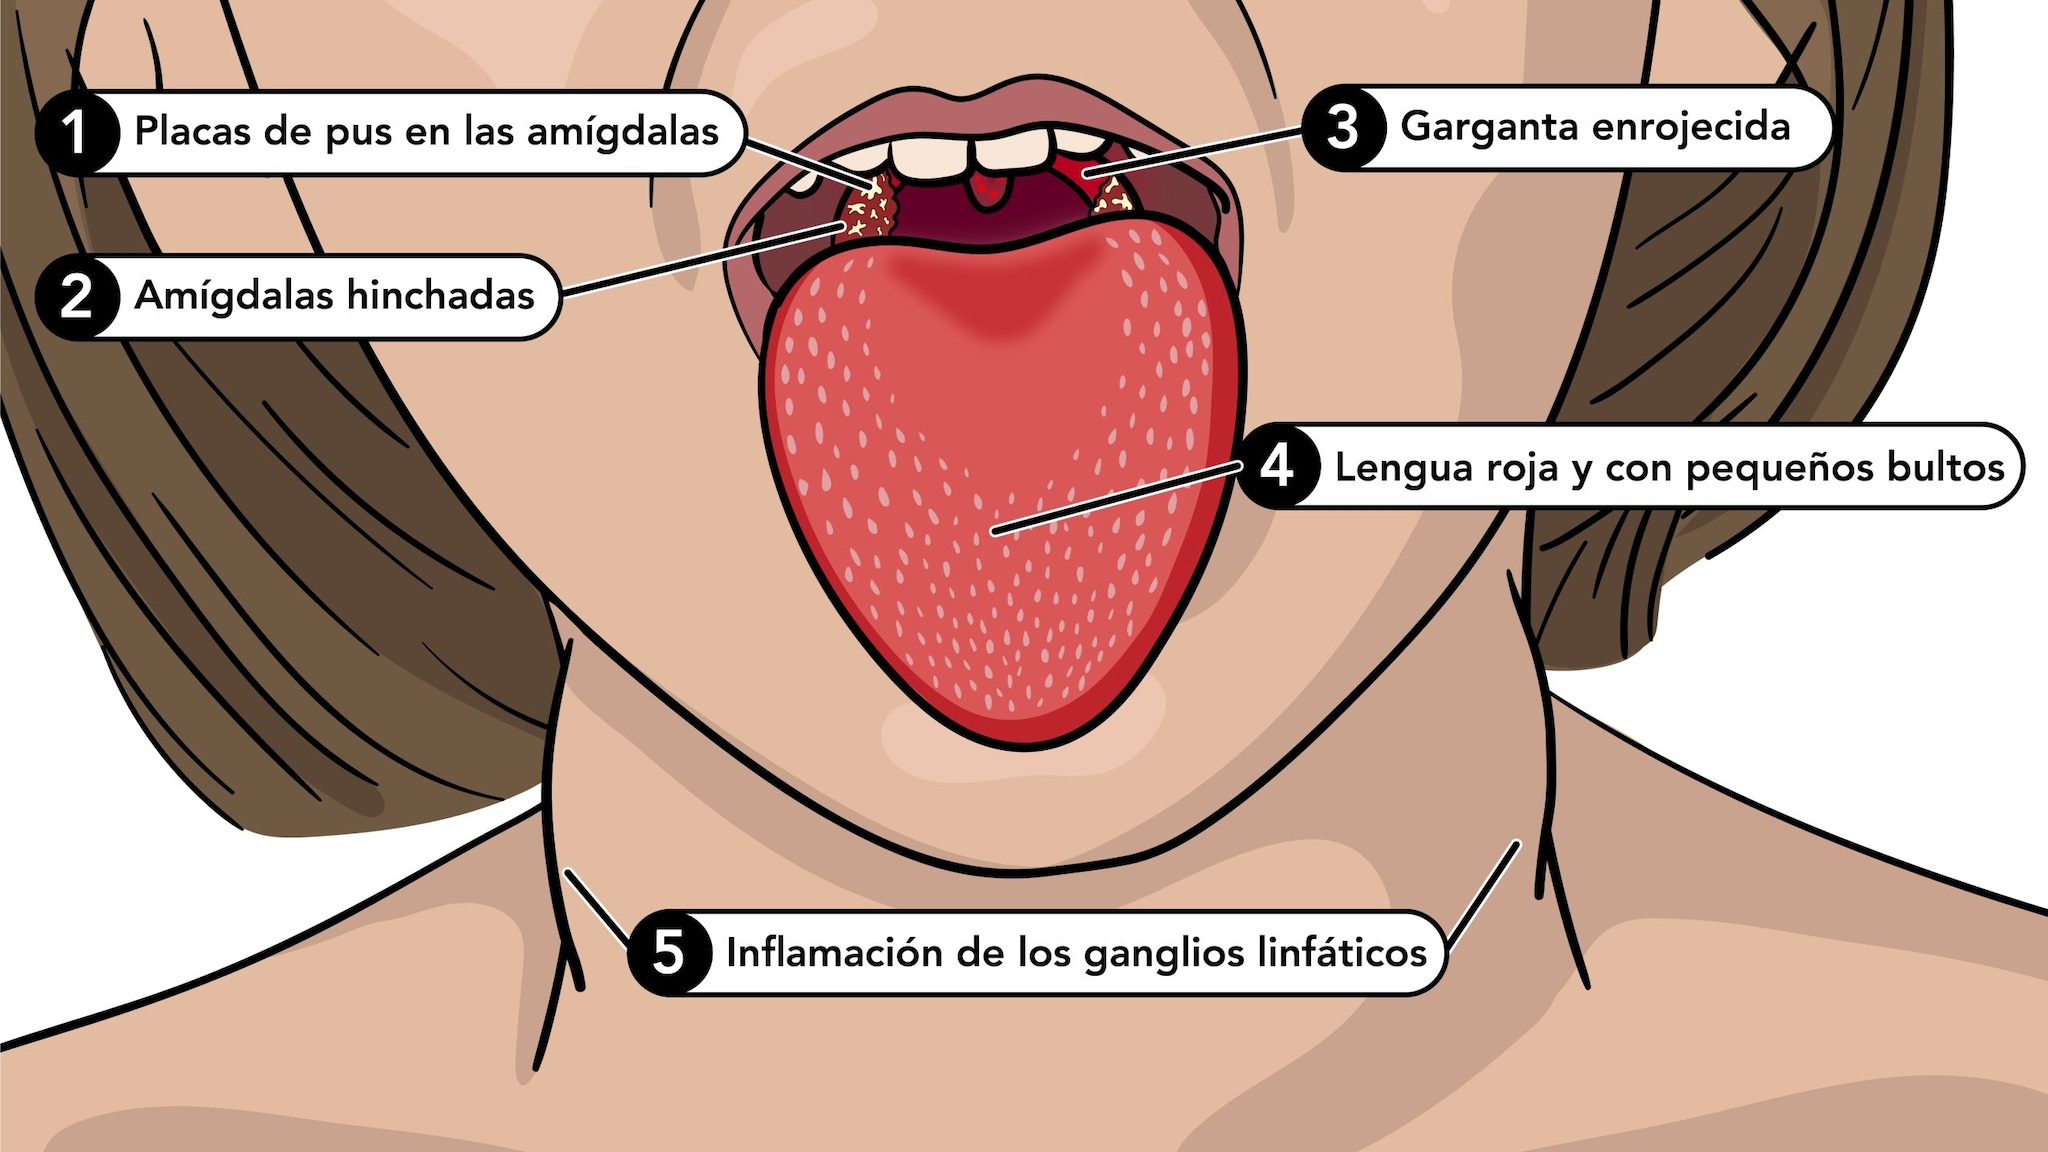 Los síntomas de la escarlatina incluyen la lengua roja y con pequeños bultos, garganta roja, amigdalas hinchadas y glangeos linfáticos inflamados.